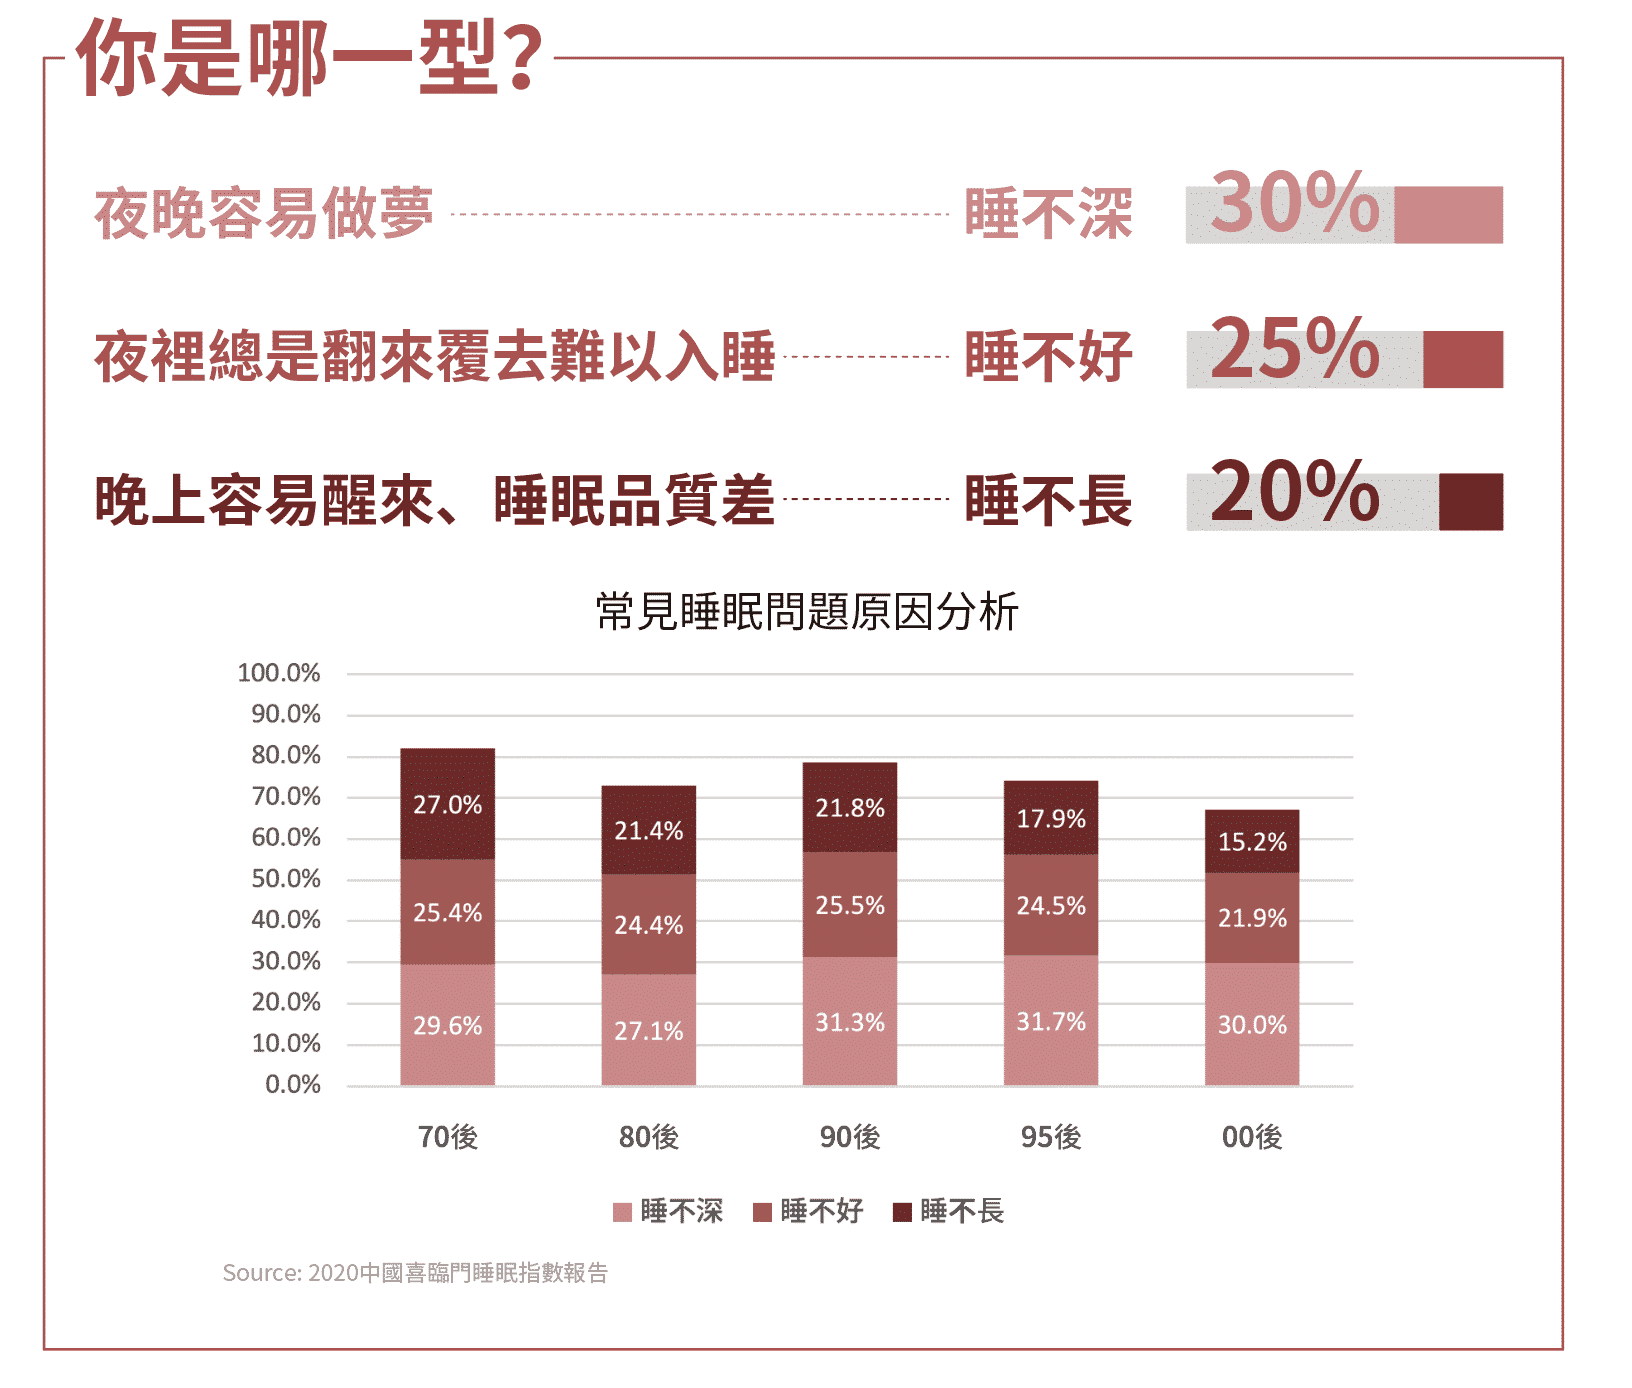 中國有睡眠問題的人口超過3億人，其中以70後睡眠問題最嚴重佔82%，其次是90後佔78.6%、95後74.1%、80後72.9%。這族群正好是漸低齡化的趨勢。